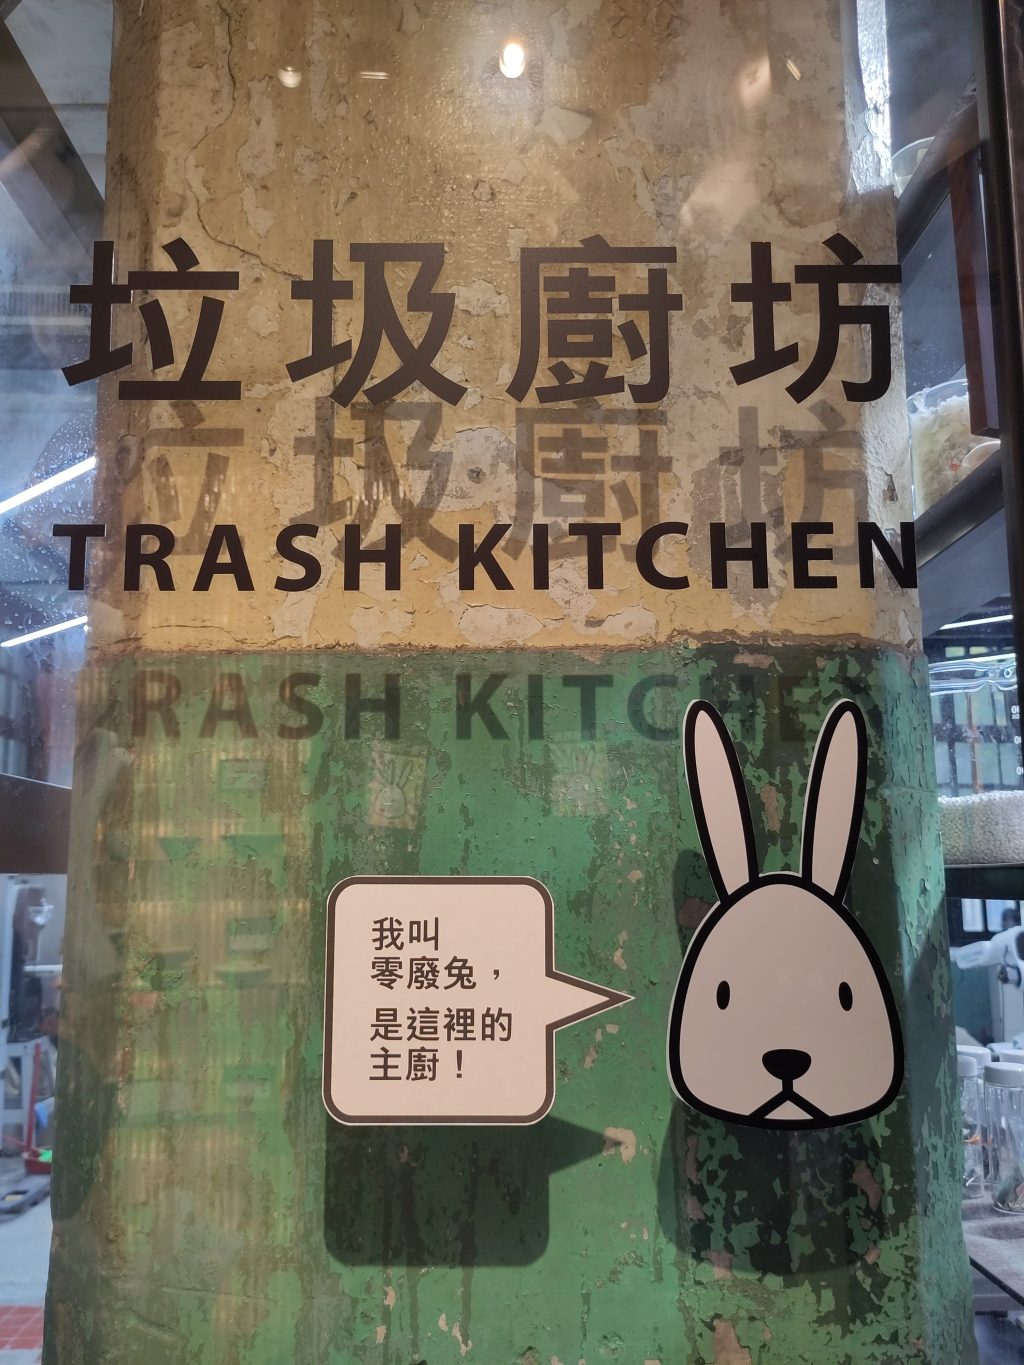 沒有垃圾的「垃圾廚坊 Trash Kitchen」